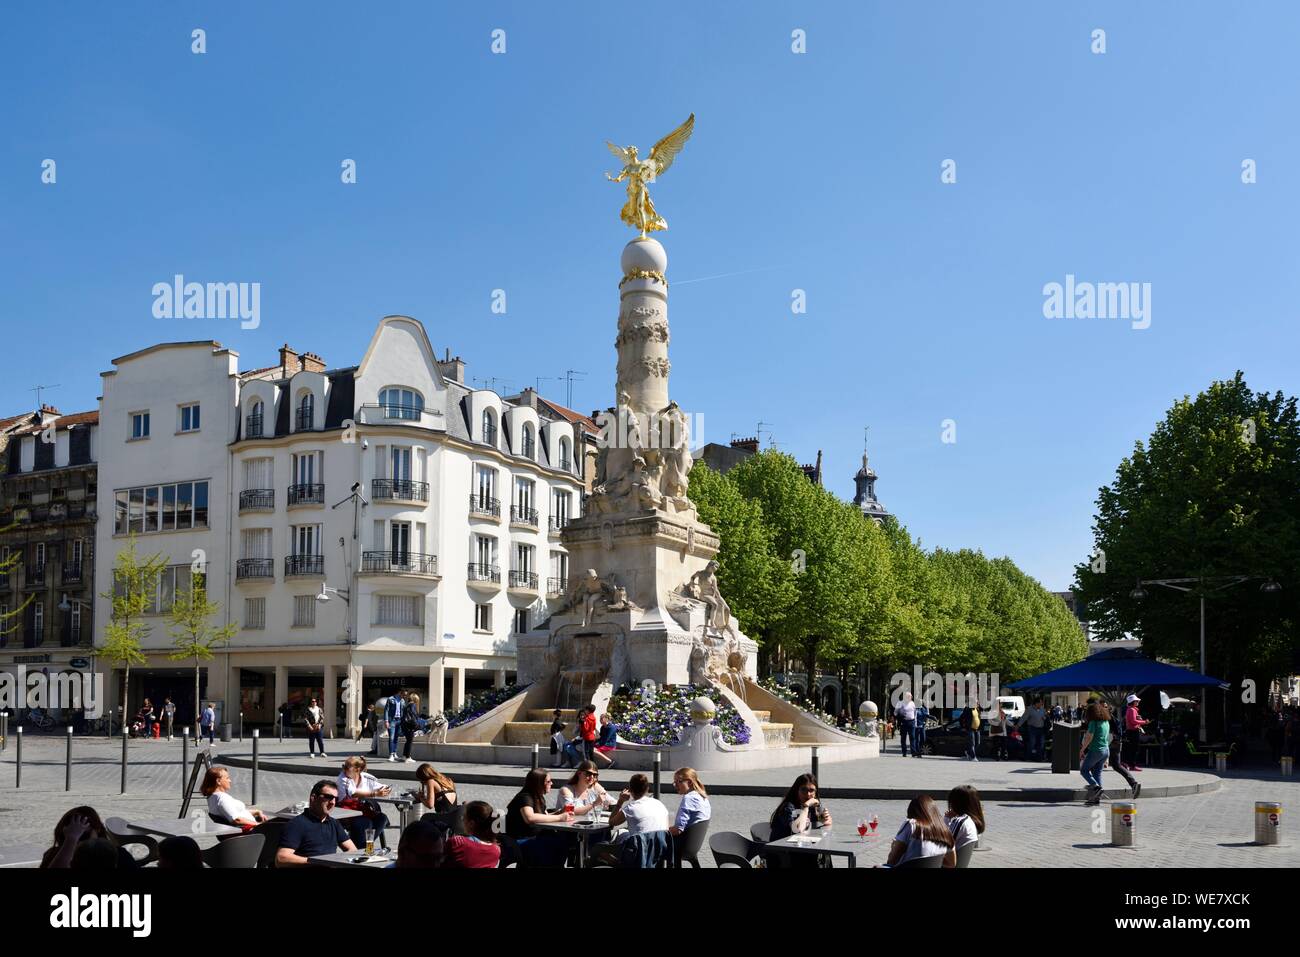 France, Marne, Reims, place Drouet d'Erlon, fontaine Sube datant de 1906 Banque D'Images